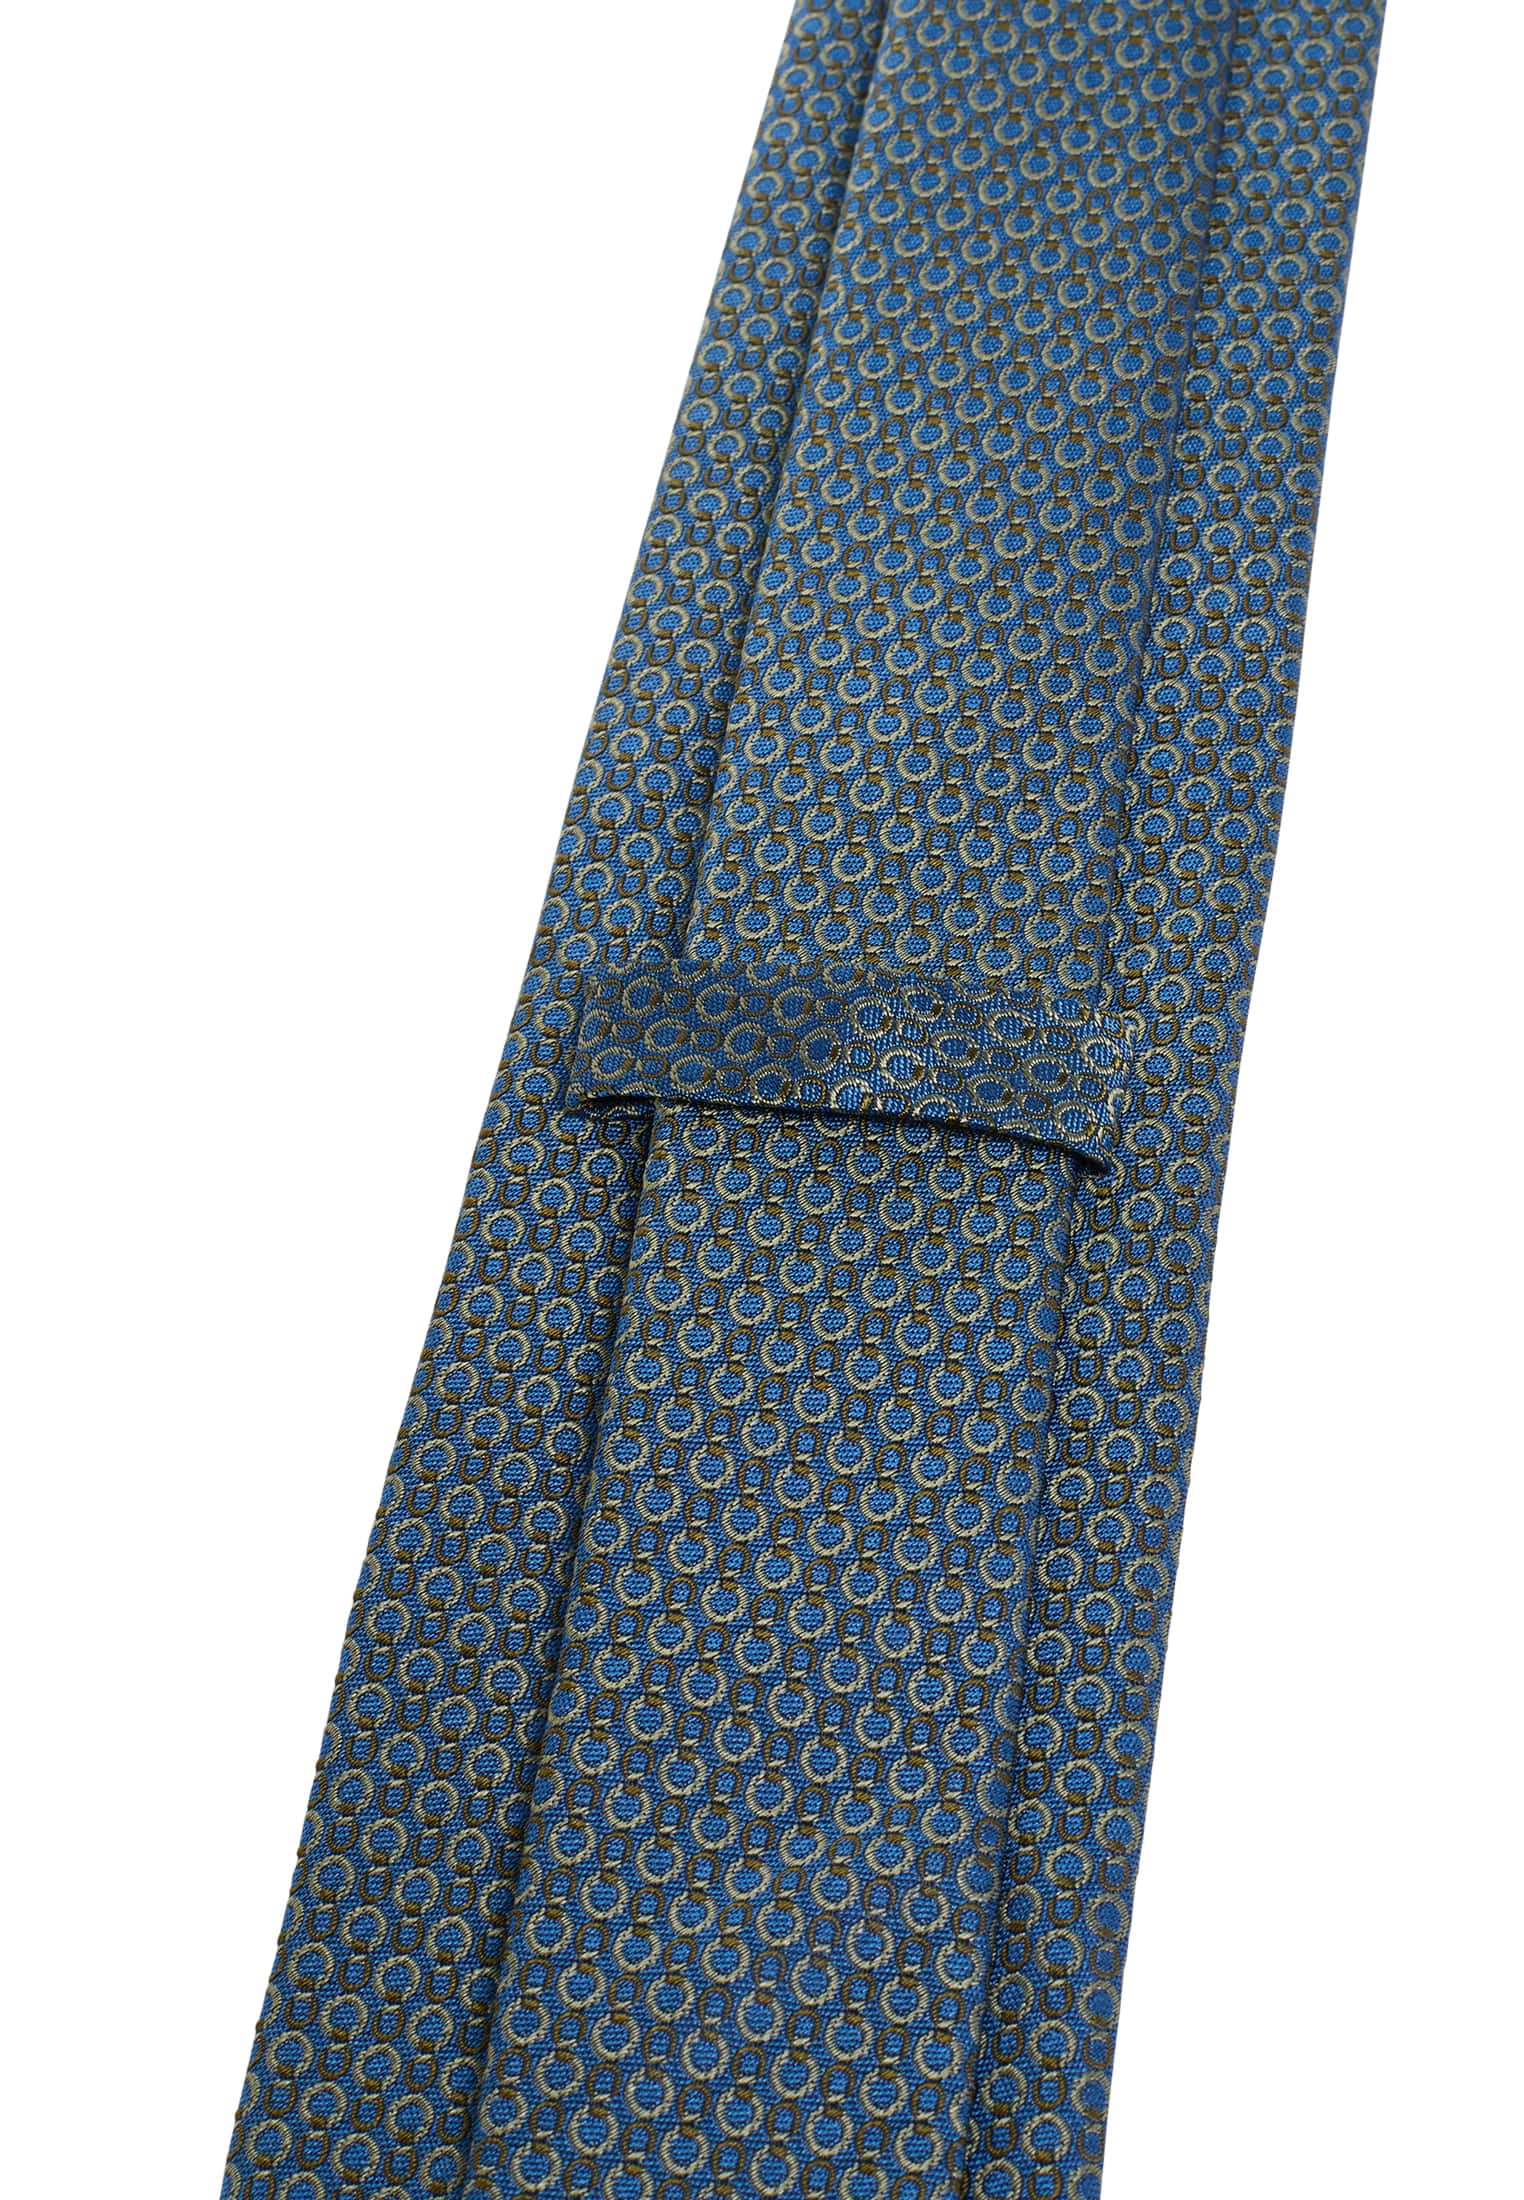 Krawatte in blau/grün strukturiert | blau/grün | 142 | 1AC01945-81-48-142